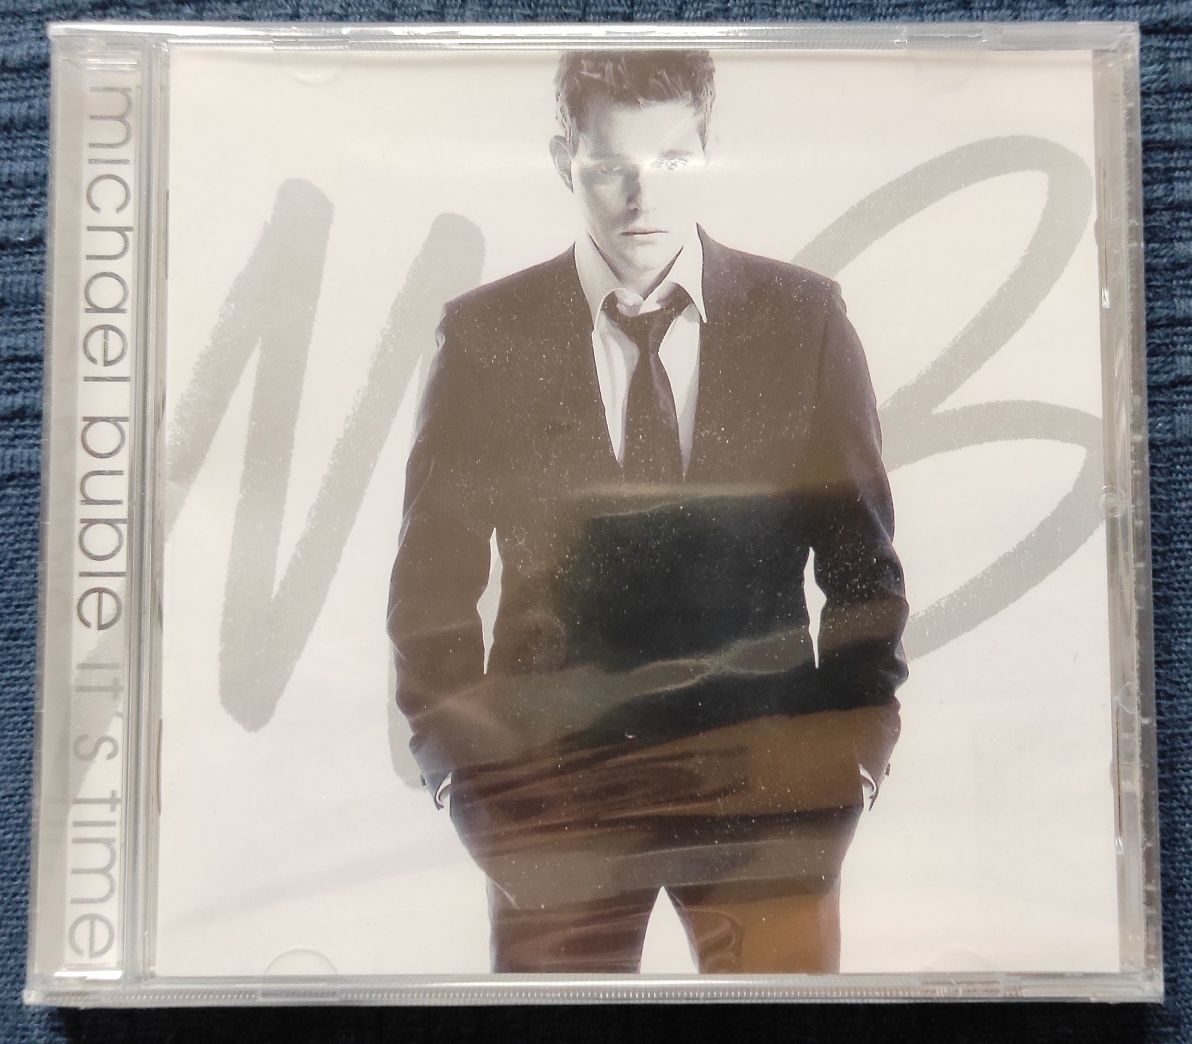 Michael Buble "It's Time" płyta CD nowa w folii